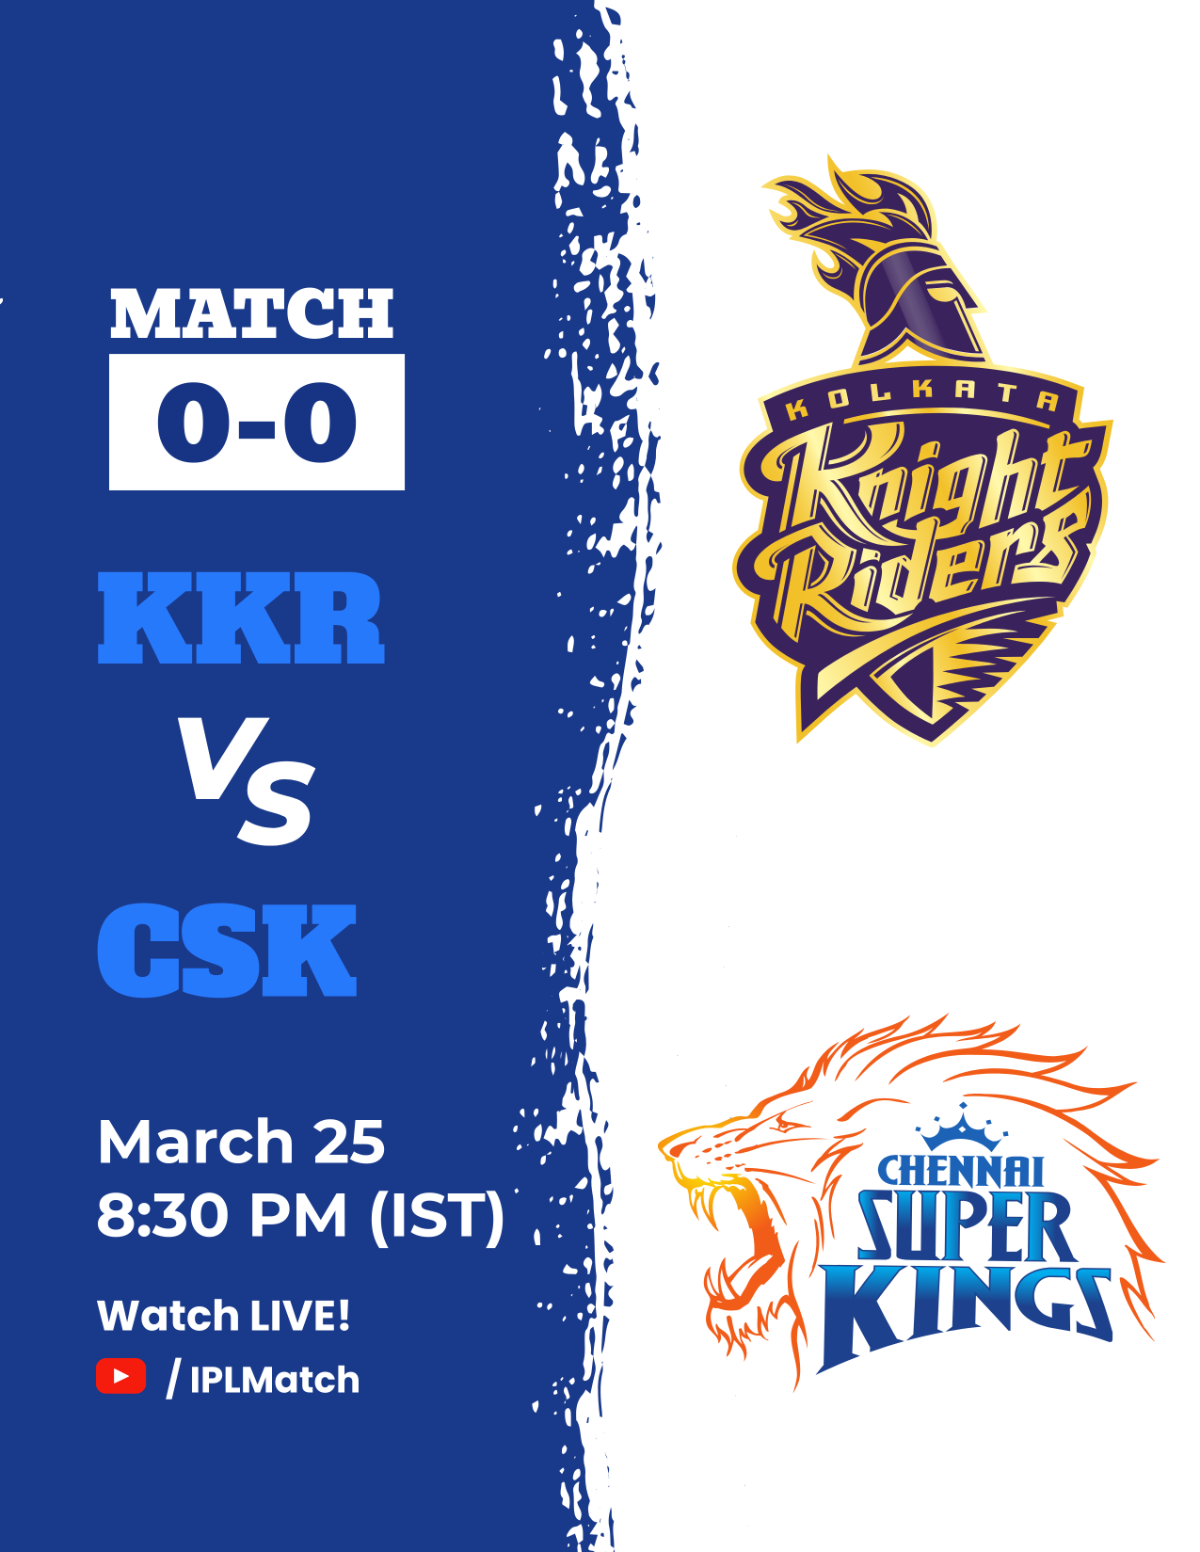 Free IPL Match KKR vs CSK Flyer Design Template